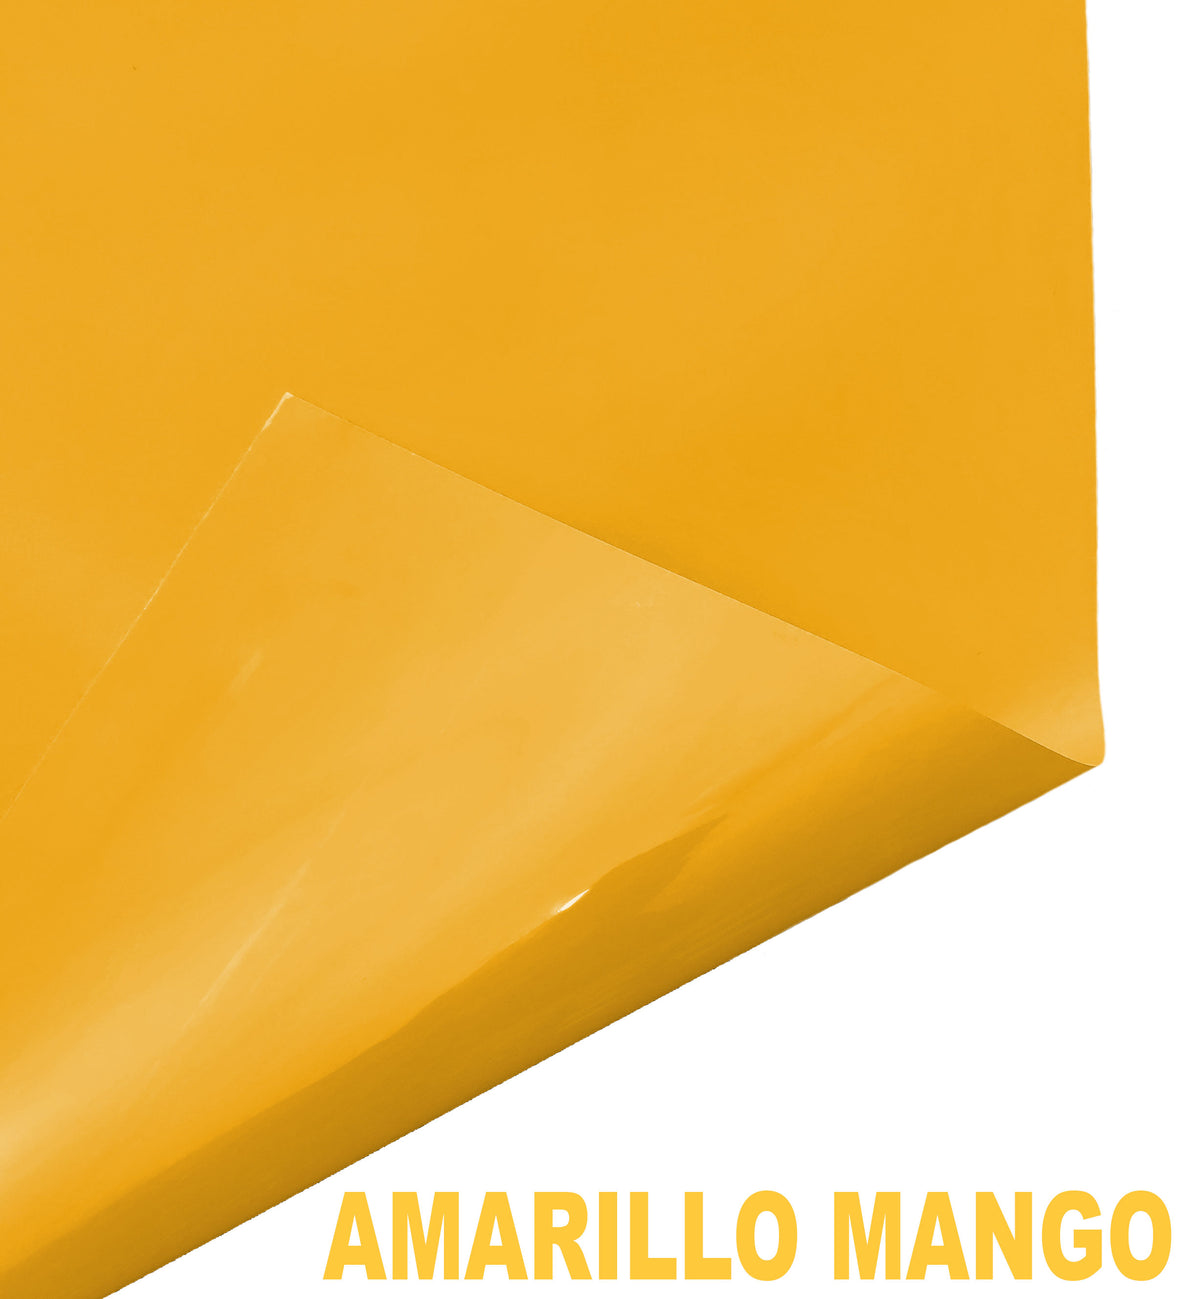 amarillo mango (BASICO)